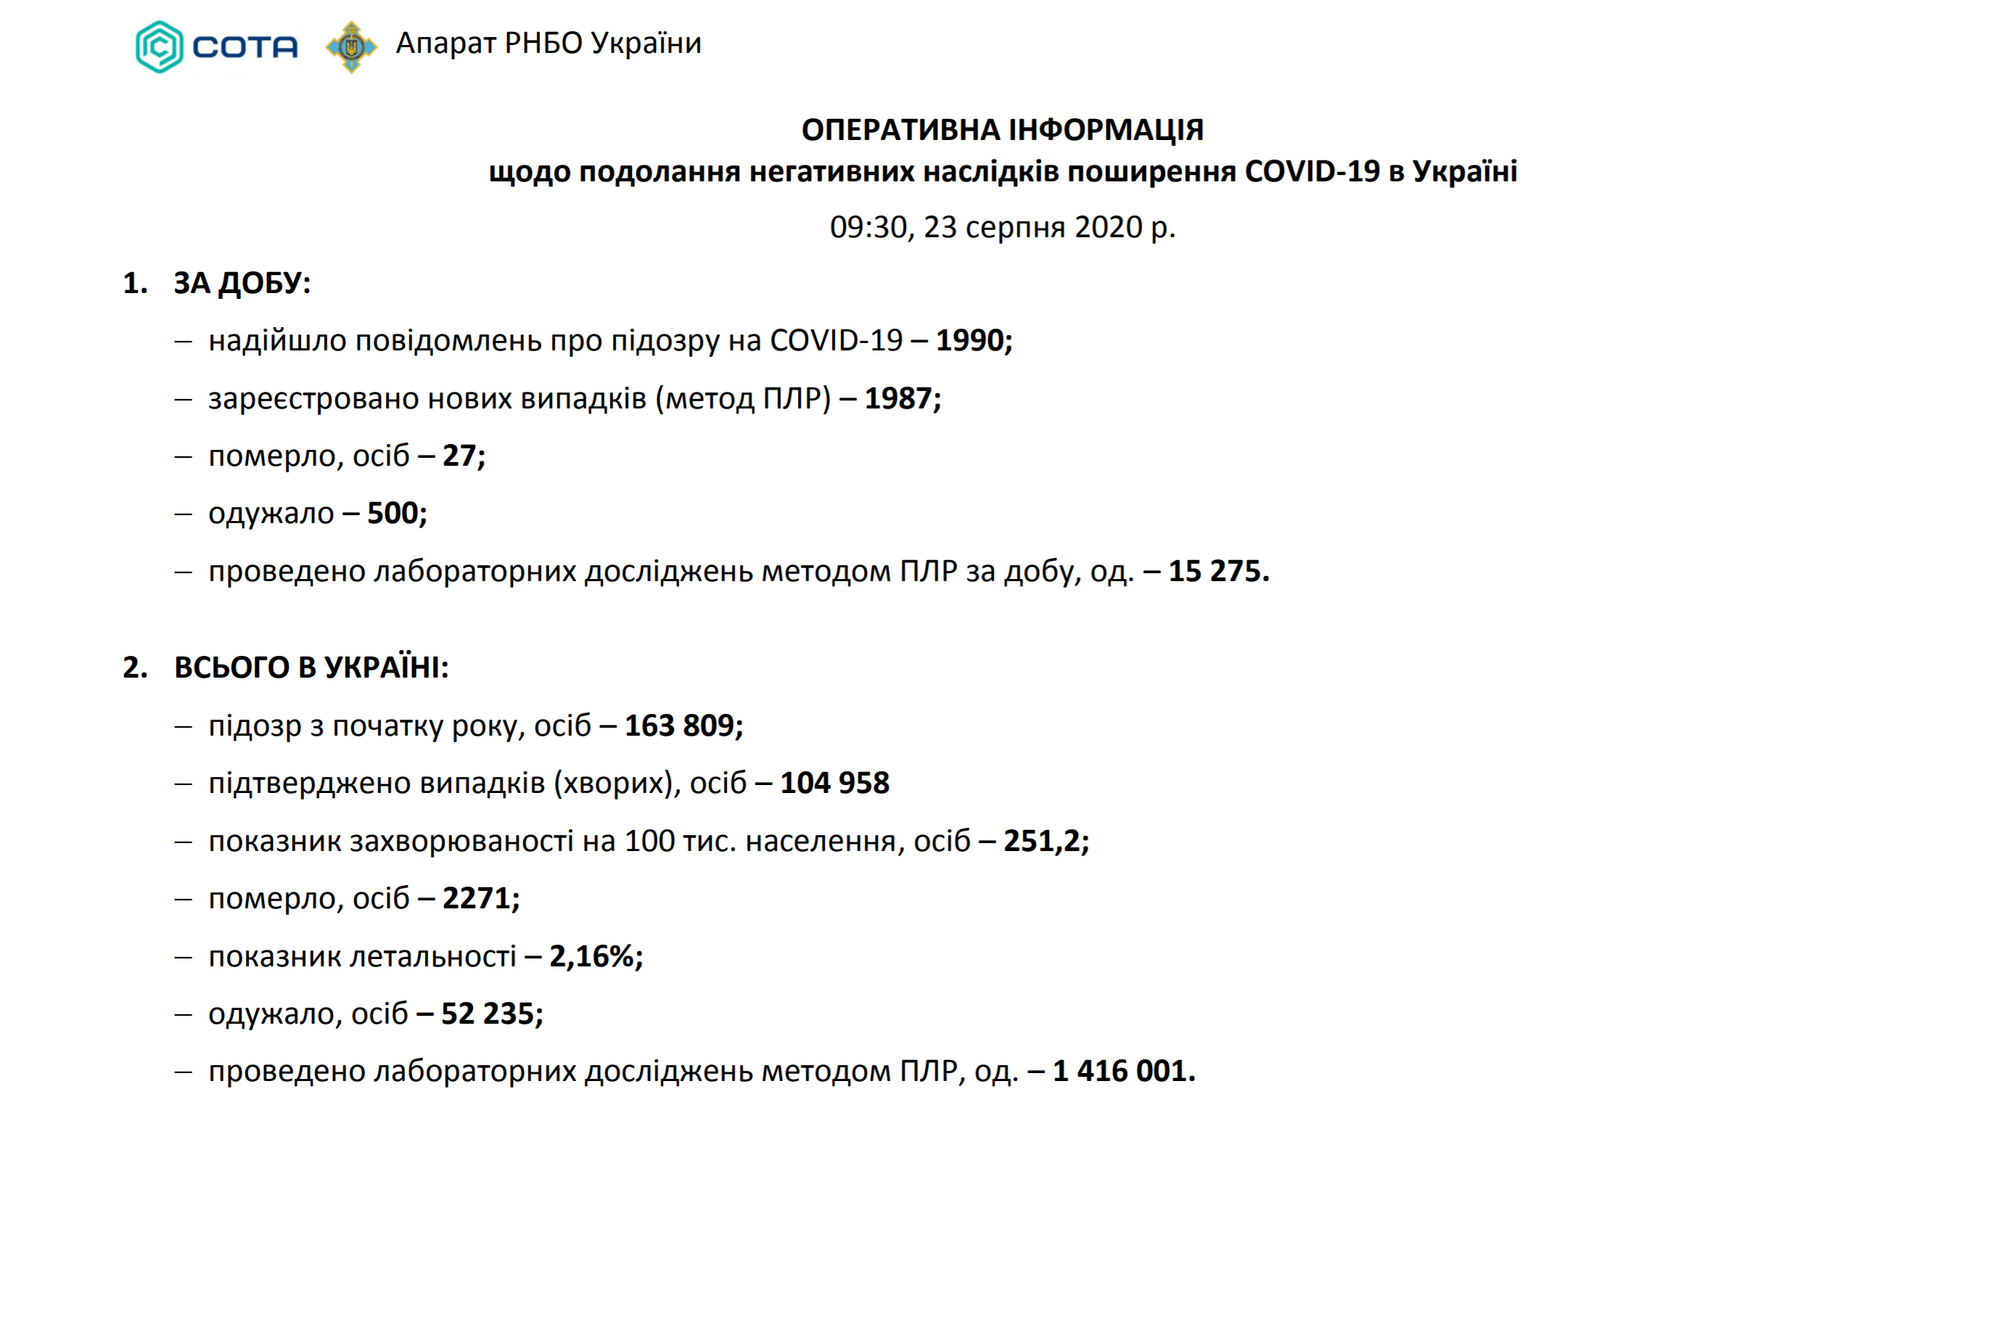 Общие данные о коронавирусе в Украине